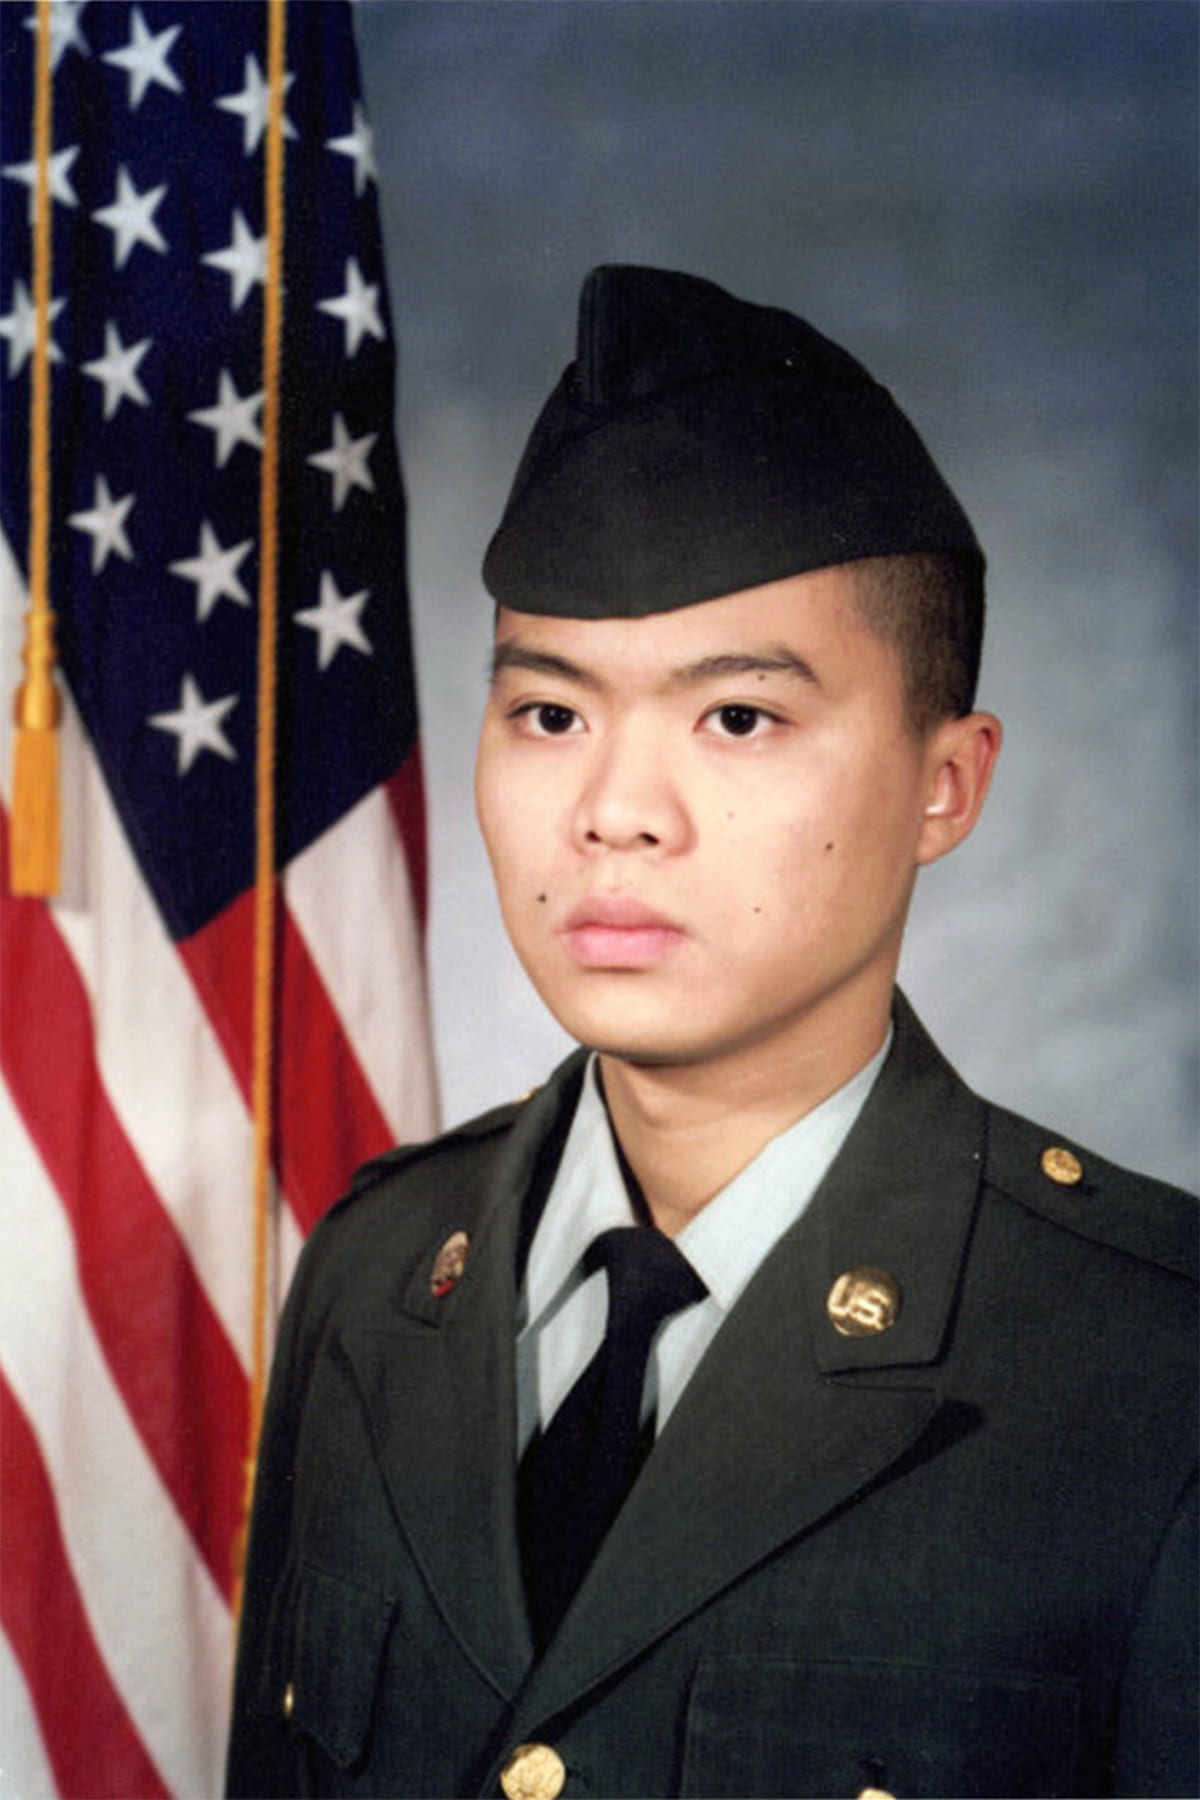 David Mak's 1989 enlistment photo